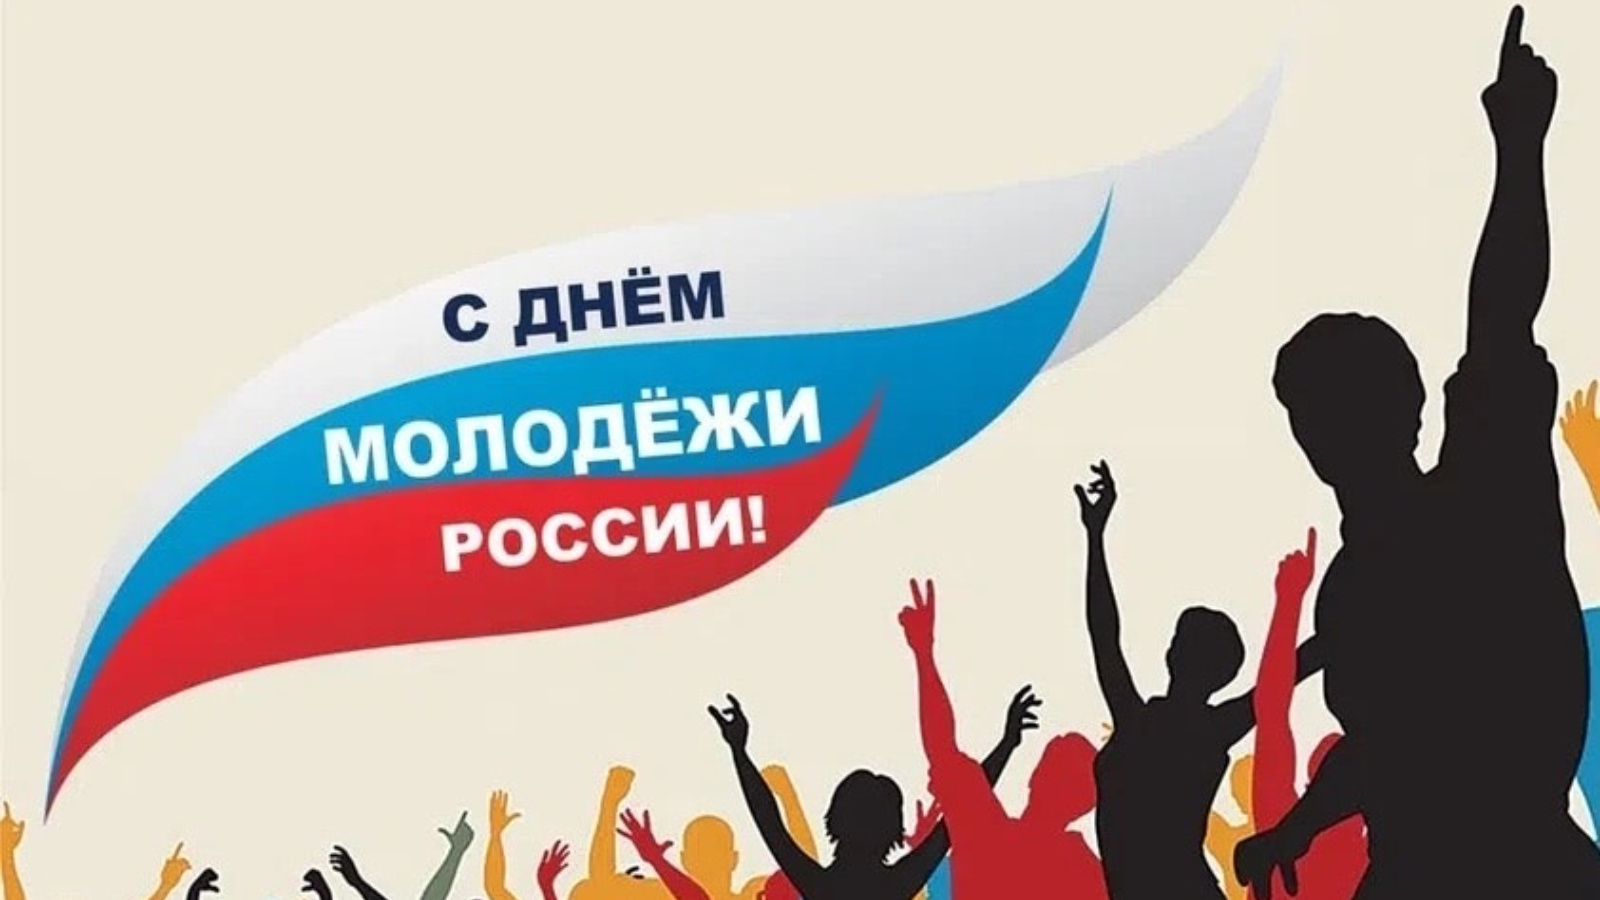 27 июня через. С днем молодежи. 27 Июня день молодежи. День молодёжи (Россия). С днём молодёжи картинки.